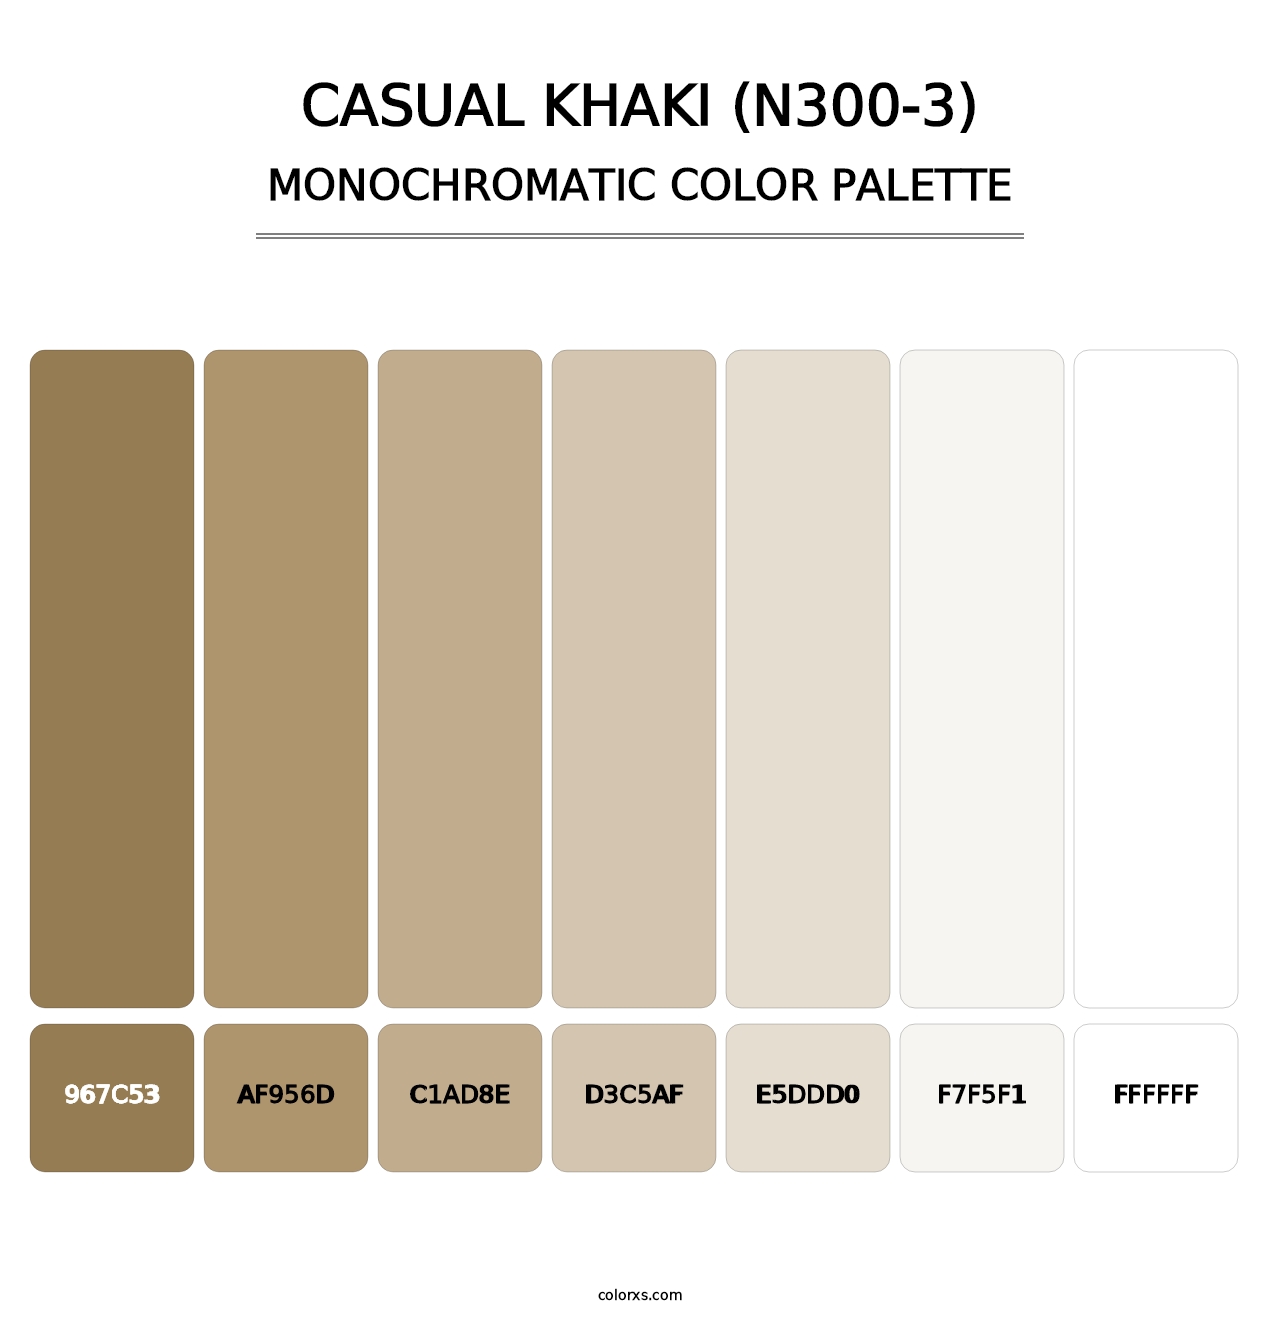 Casual Khaki (N300-3) - Monochromatic Color Palette